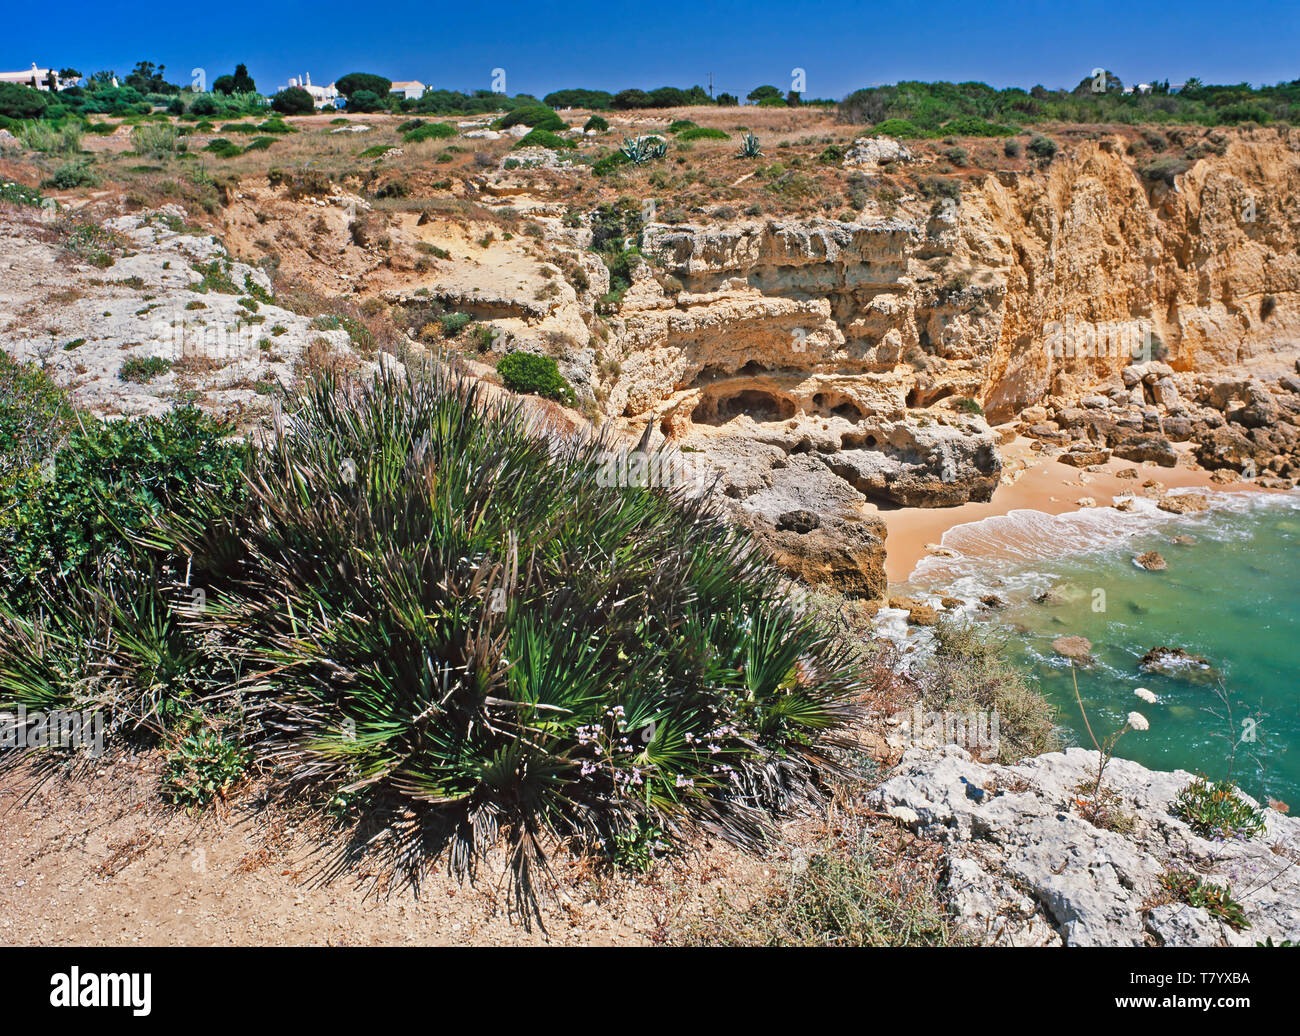 Algarve costa rocciosa nei pressi di Albufeira, Portogallo meridionale Foto Stock